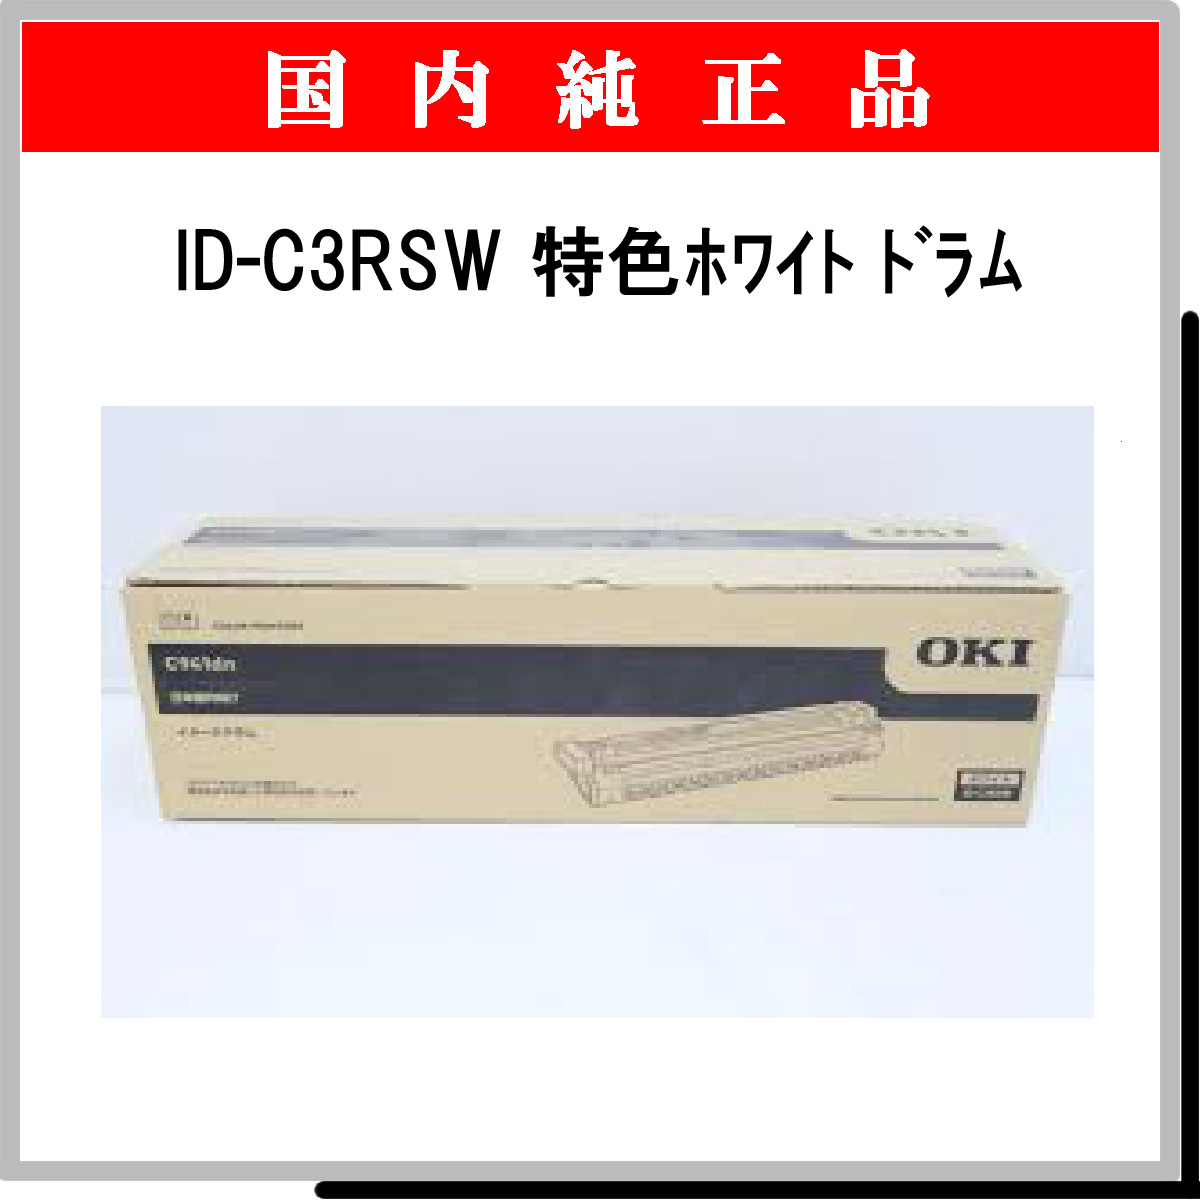 2極タイプ 沖データ OKI ID-C3RSW 純正 イメージドラム 特色ホワイト